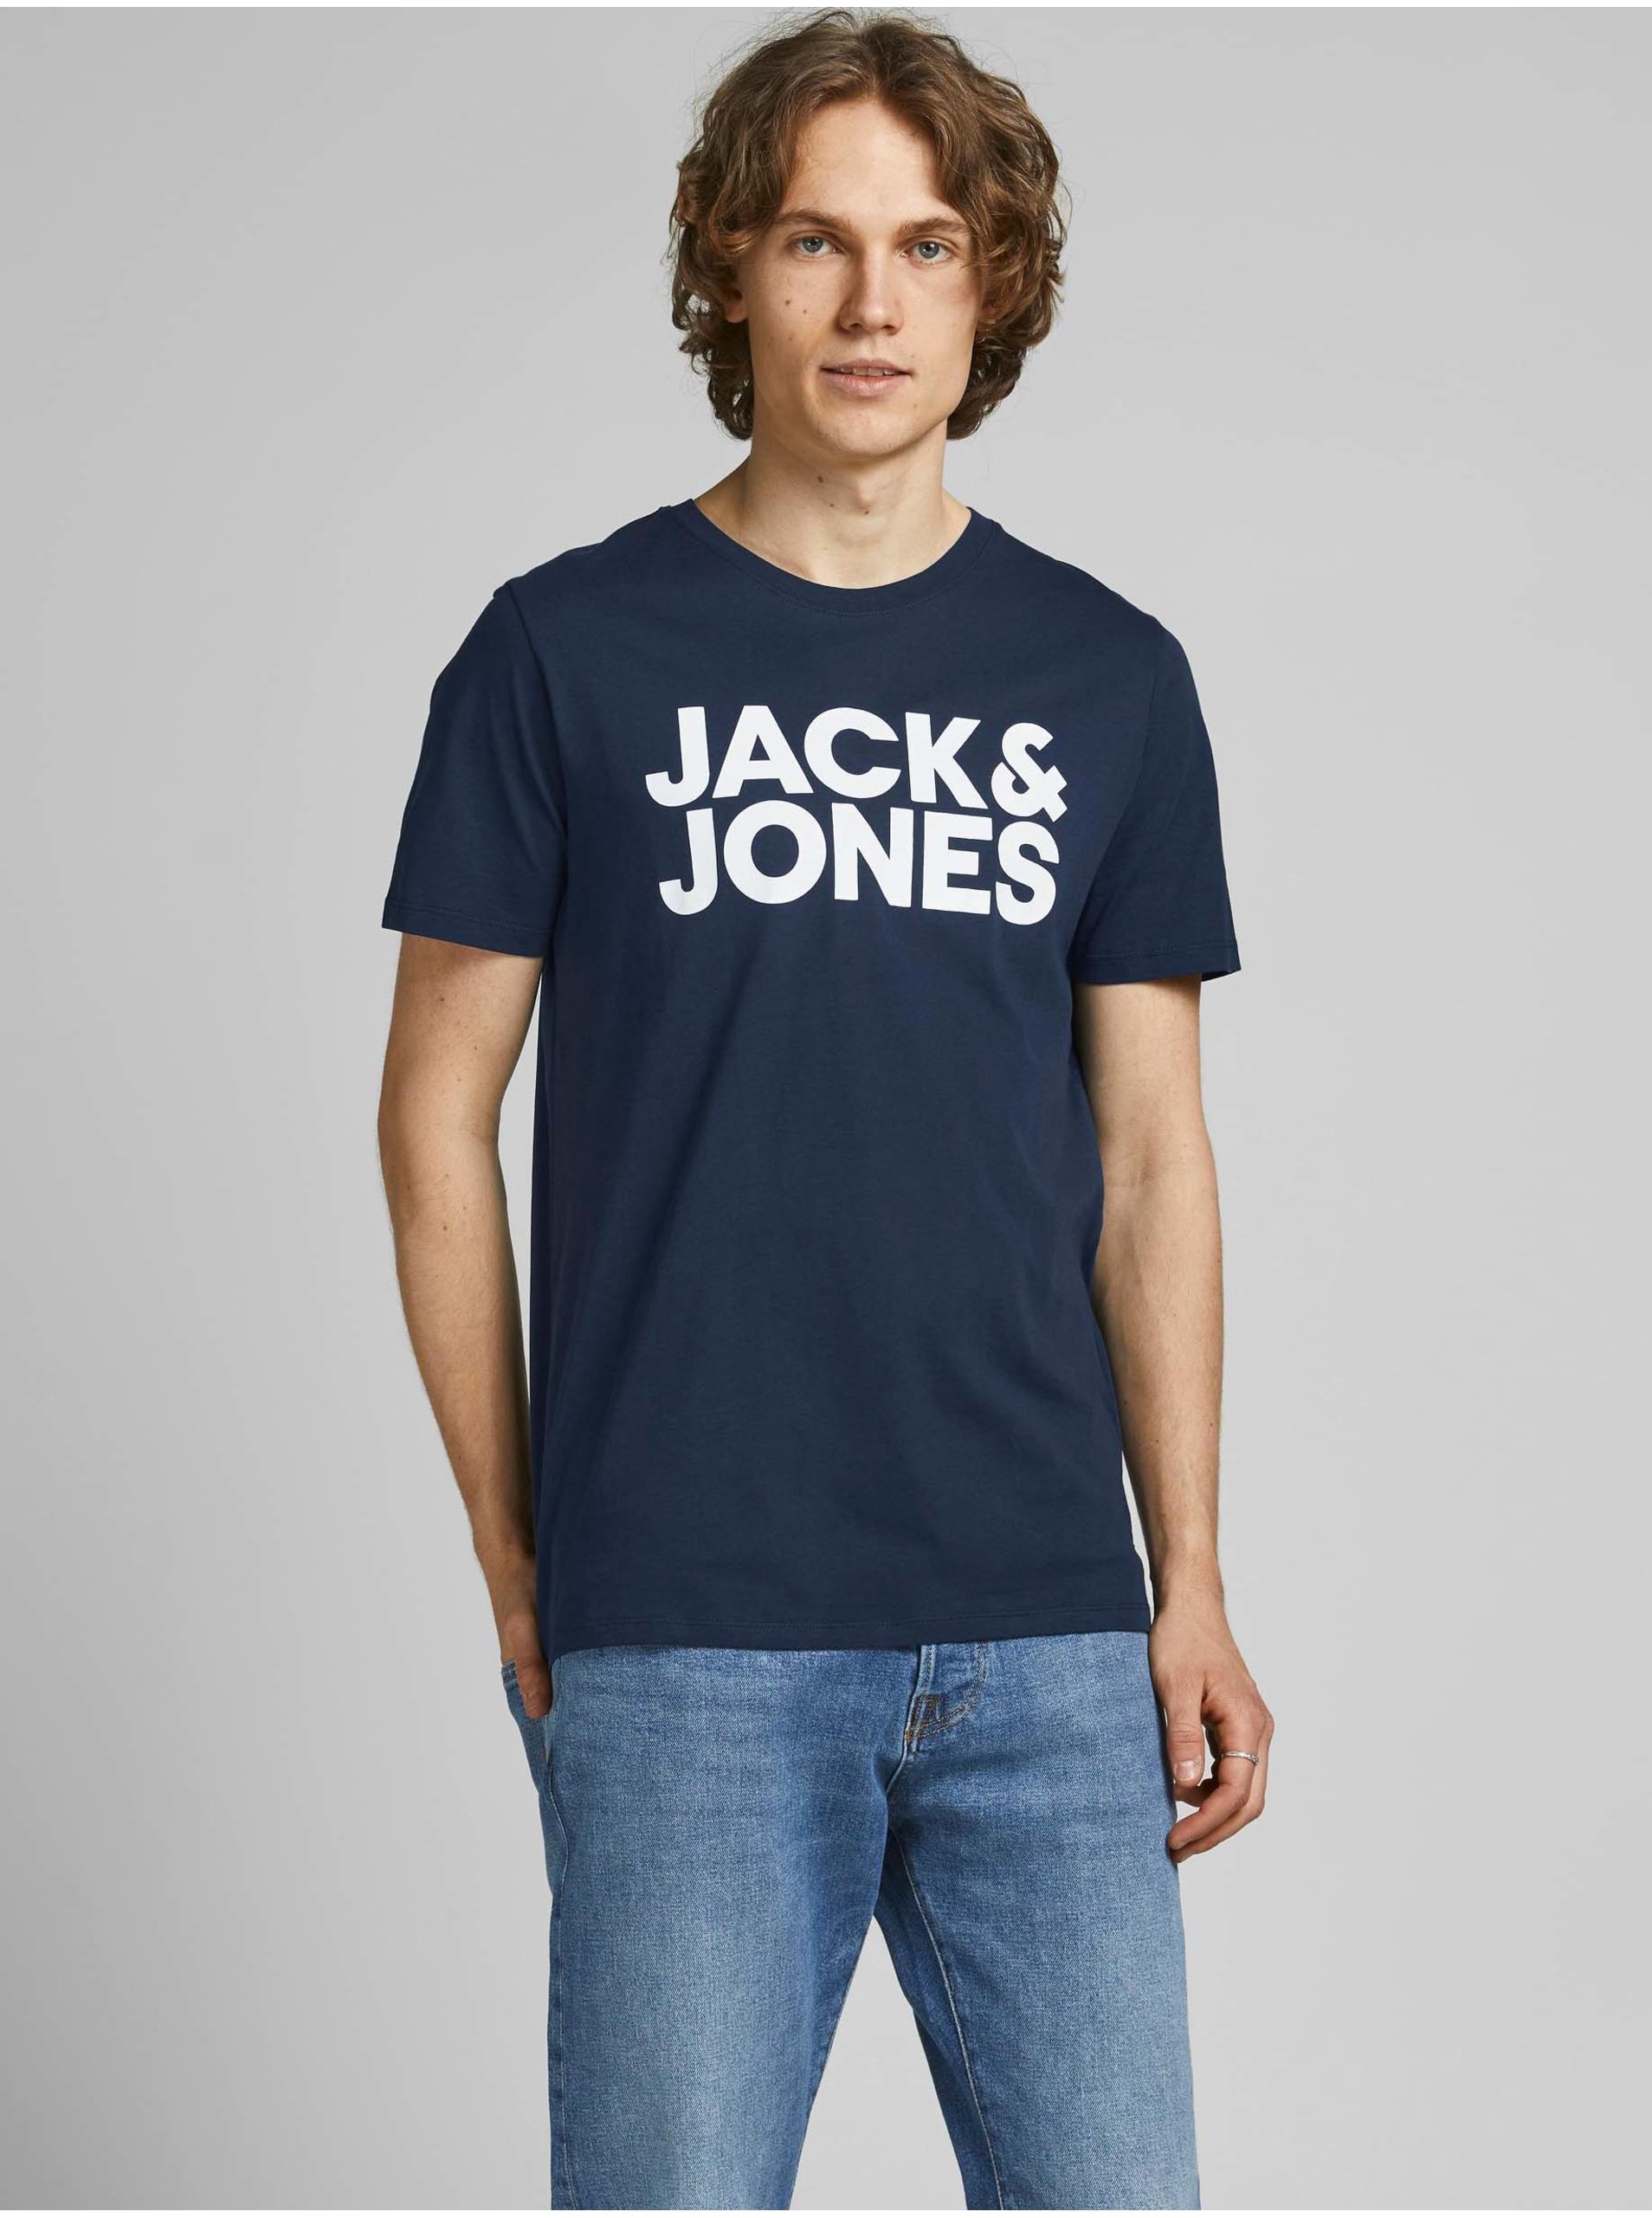 Herren T-Shirt Jack & Jones Corp